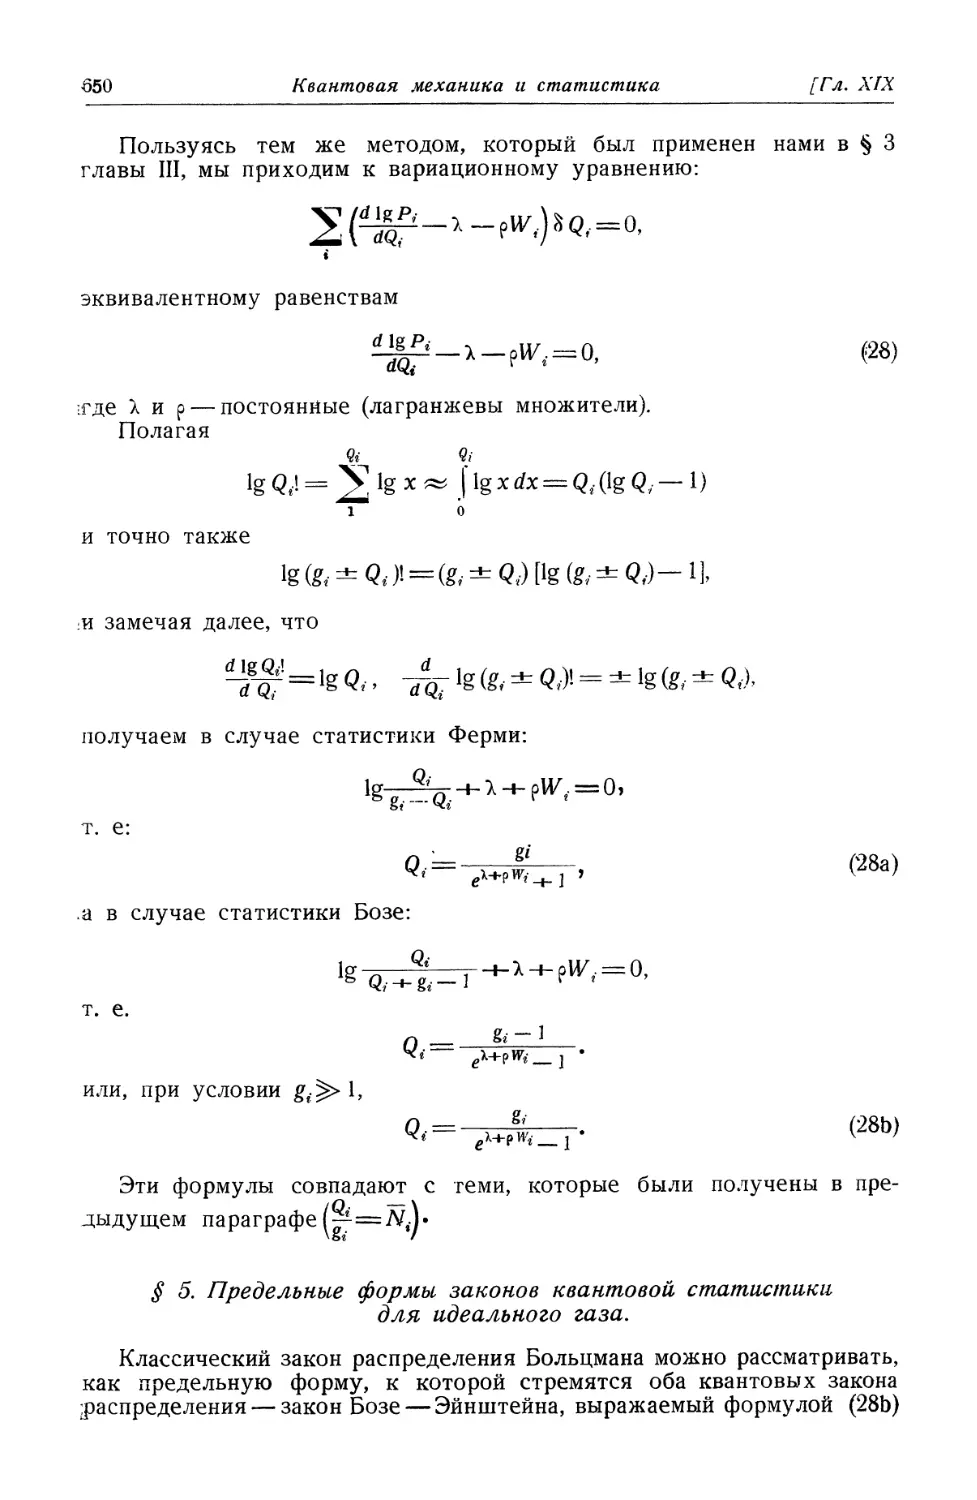 § 5. Предельные формы законов квантовой статистики для идеального газа